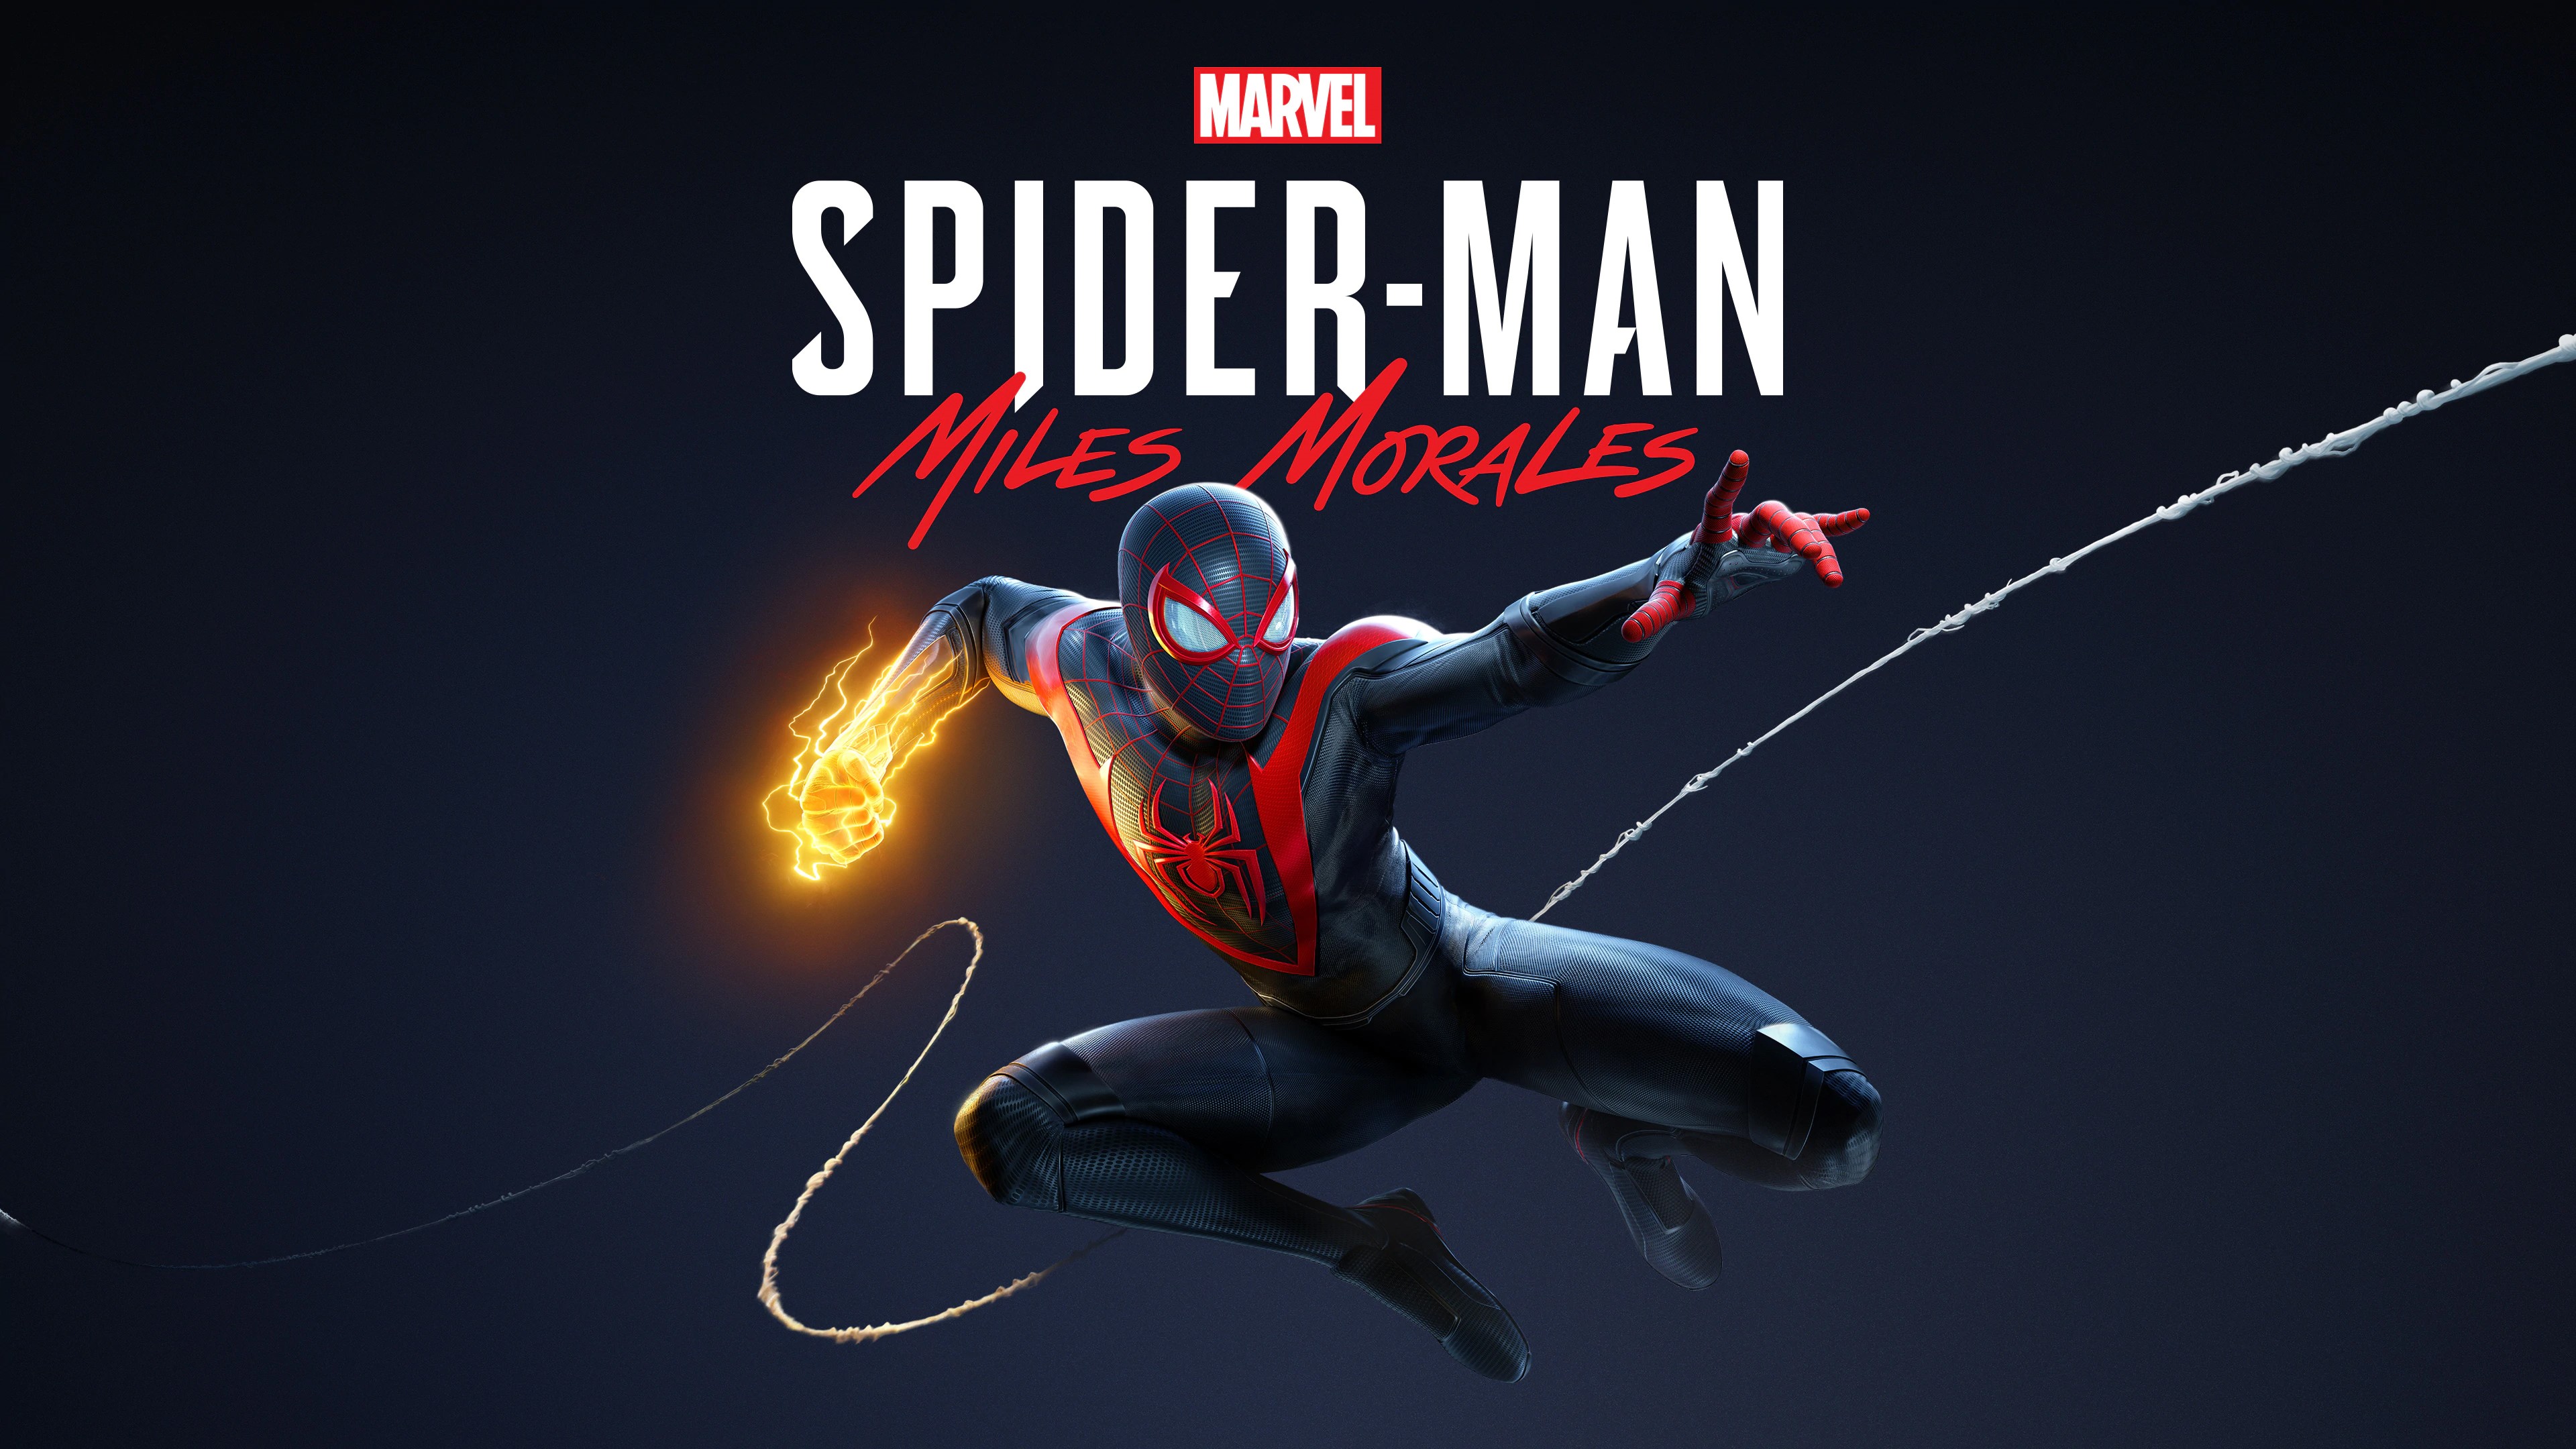 Marvel's Человек-паук /// Spider-Man: Miles Morales ( прохождение 18 )